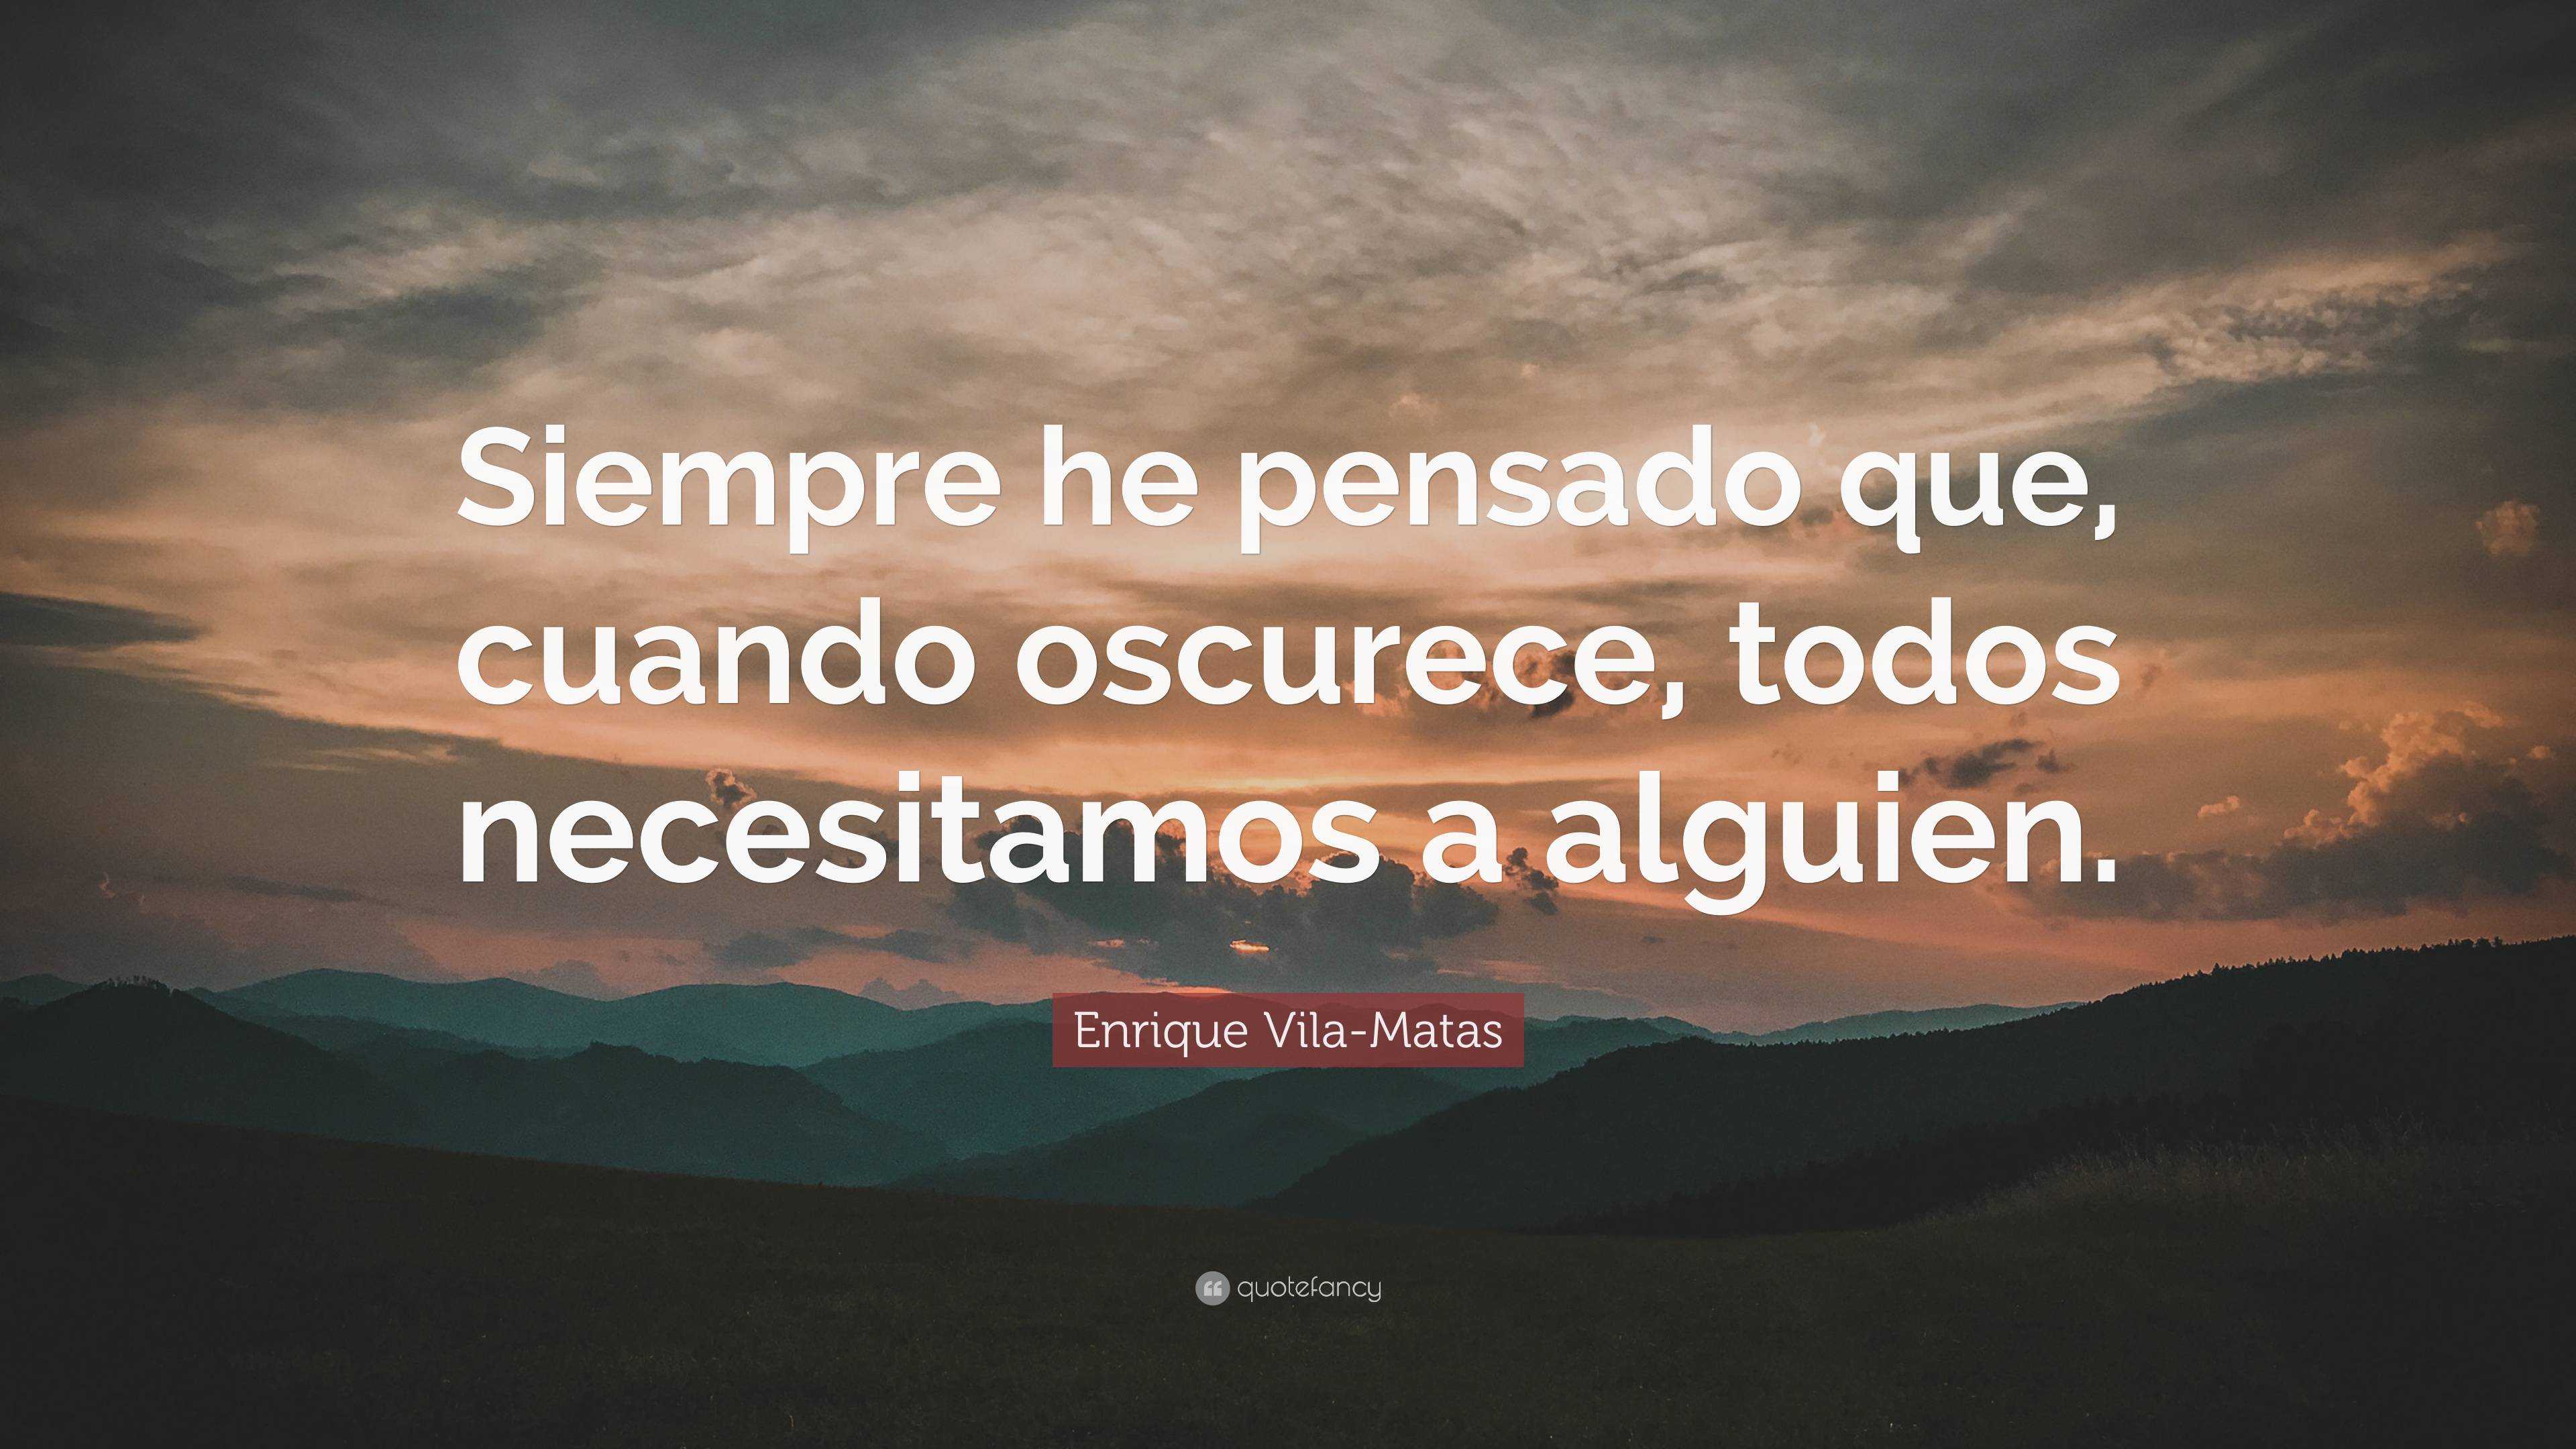 Enrique Vila-Matas Quote: “Siempre he pensado que, cuando oscurece ...